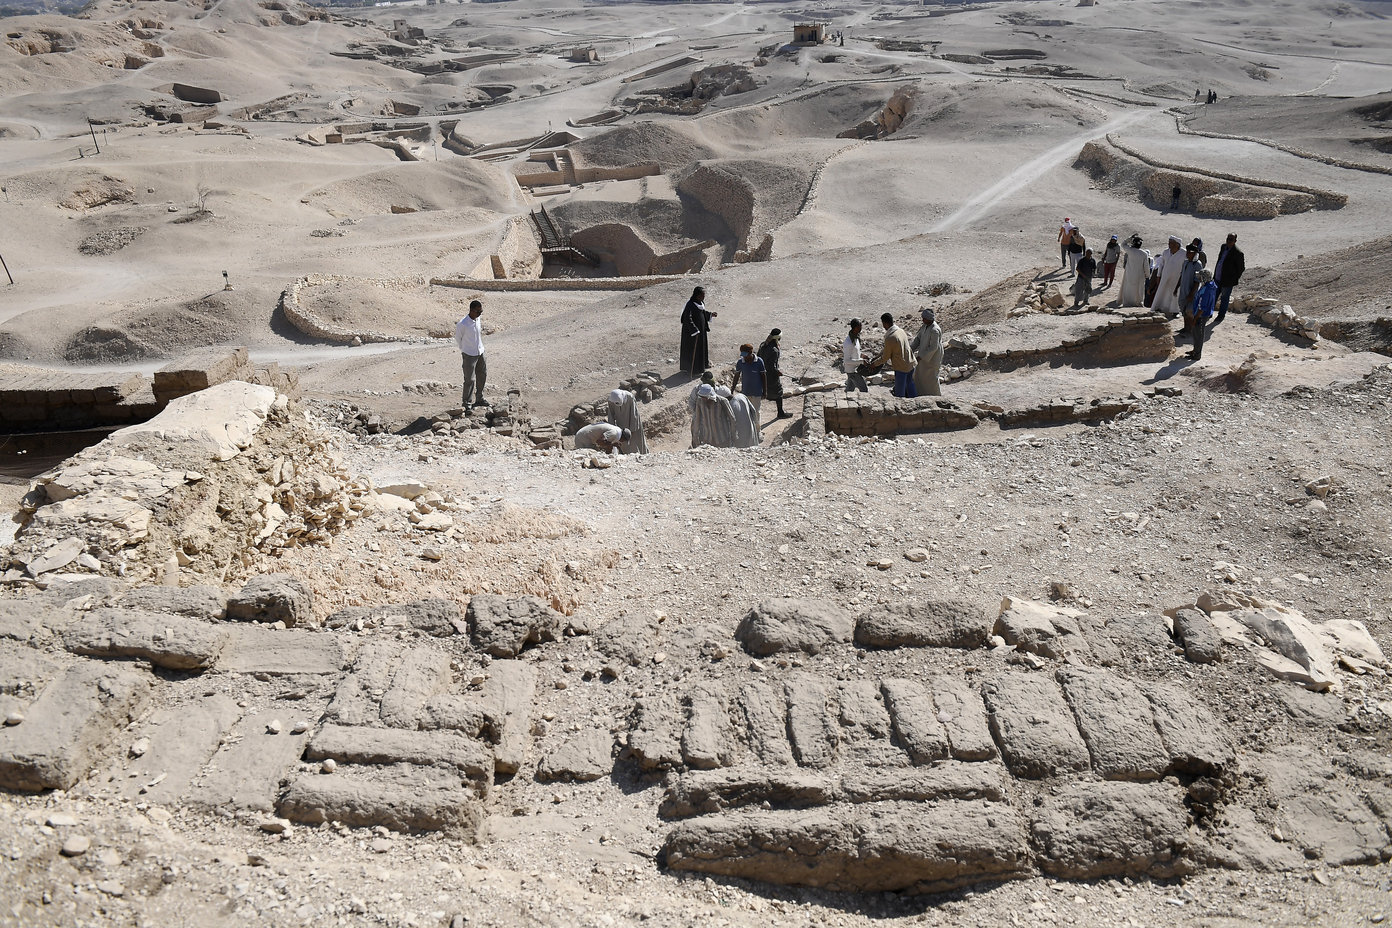 Ungarische Archäologen in Ägypten